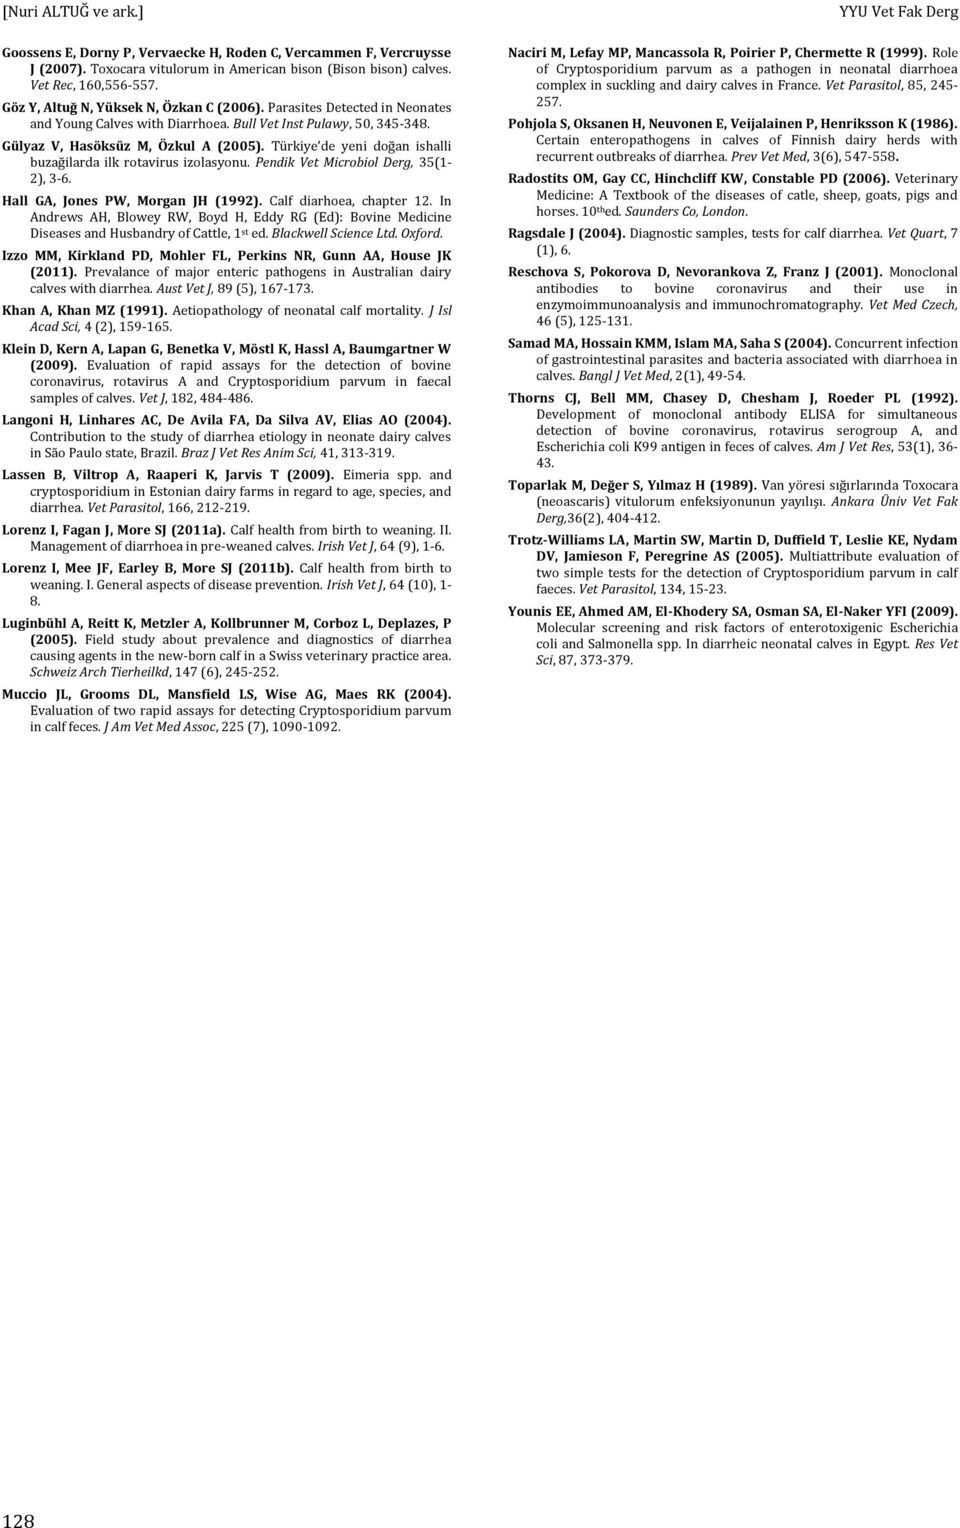 Türkiye de yeni doğan ishalli buzağilarda ilk rotavirus izolasyonu. Pendik Vet Microbiol Derg, 35(1-2), 3-6. Hall GA, Jones PW, Morgan JH (1992). Calf diarhoea, chapter 12.